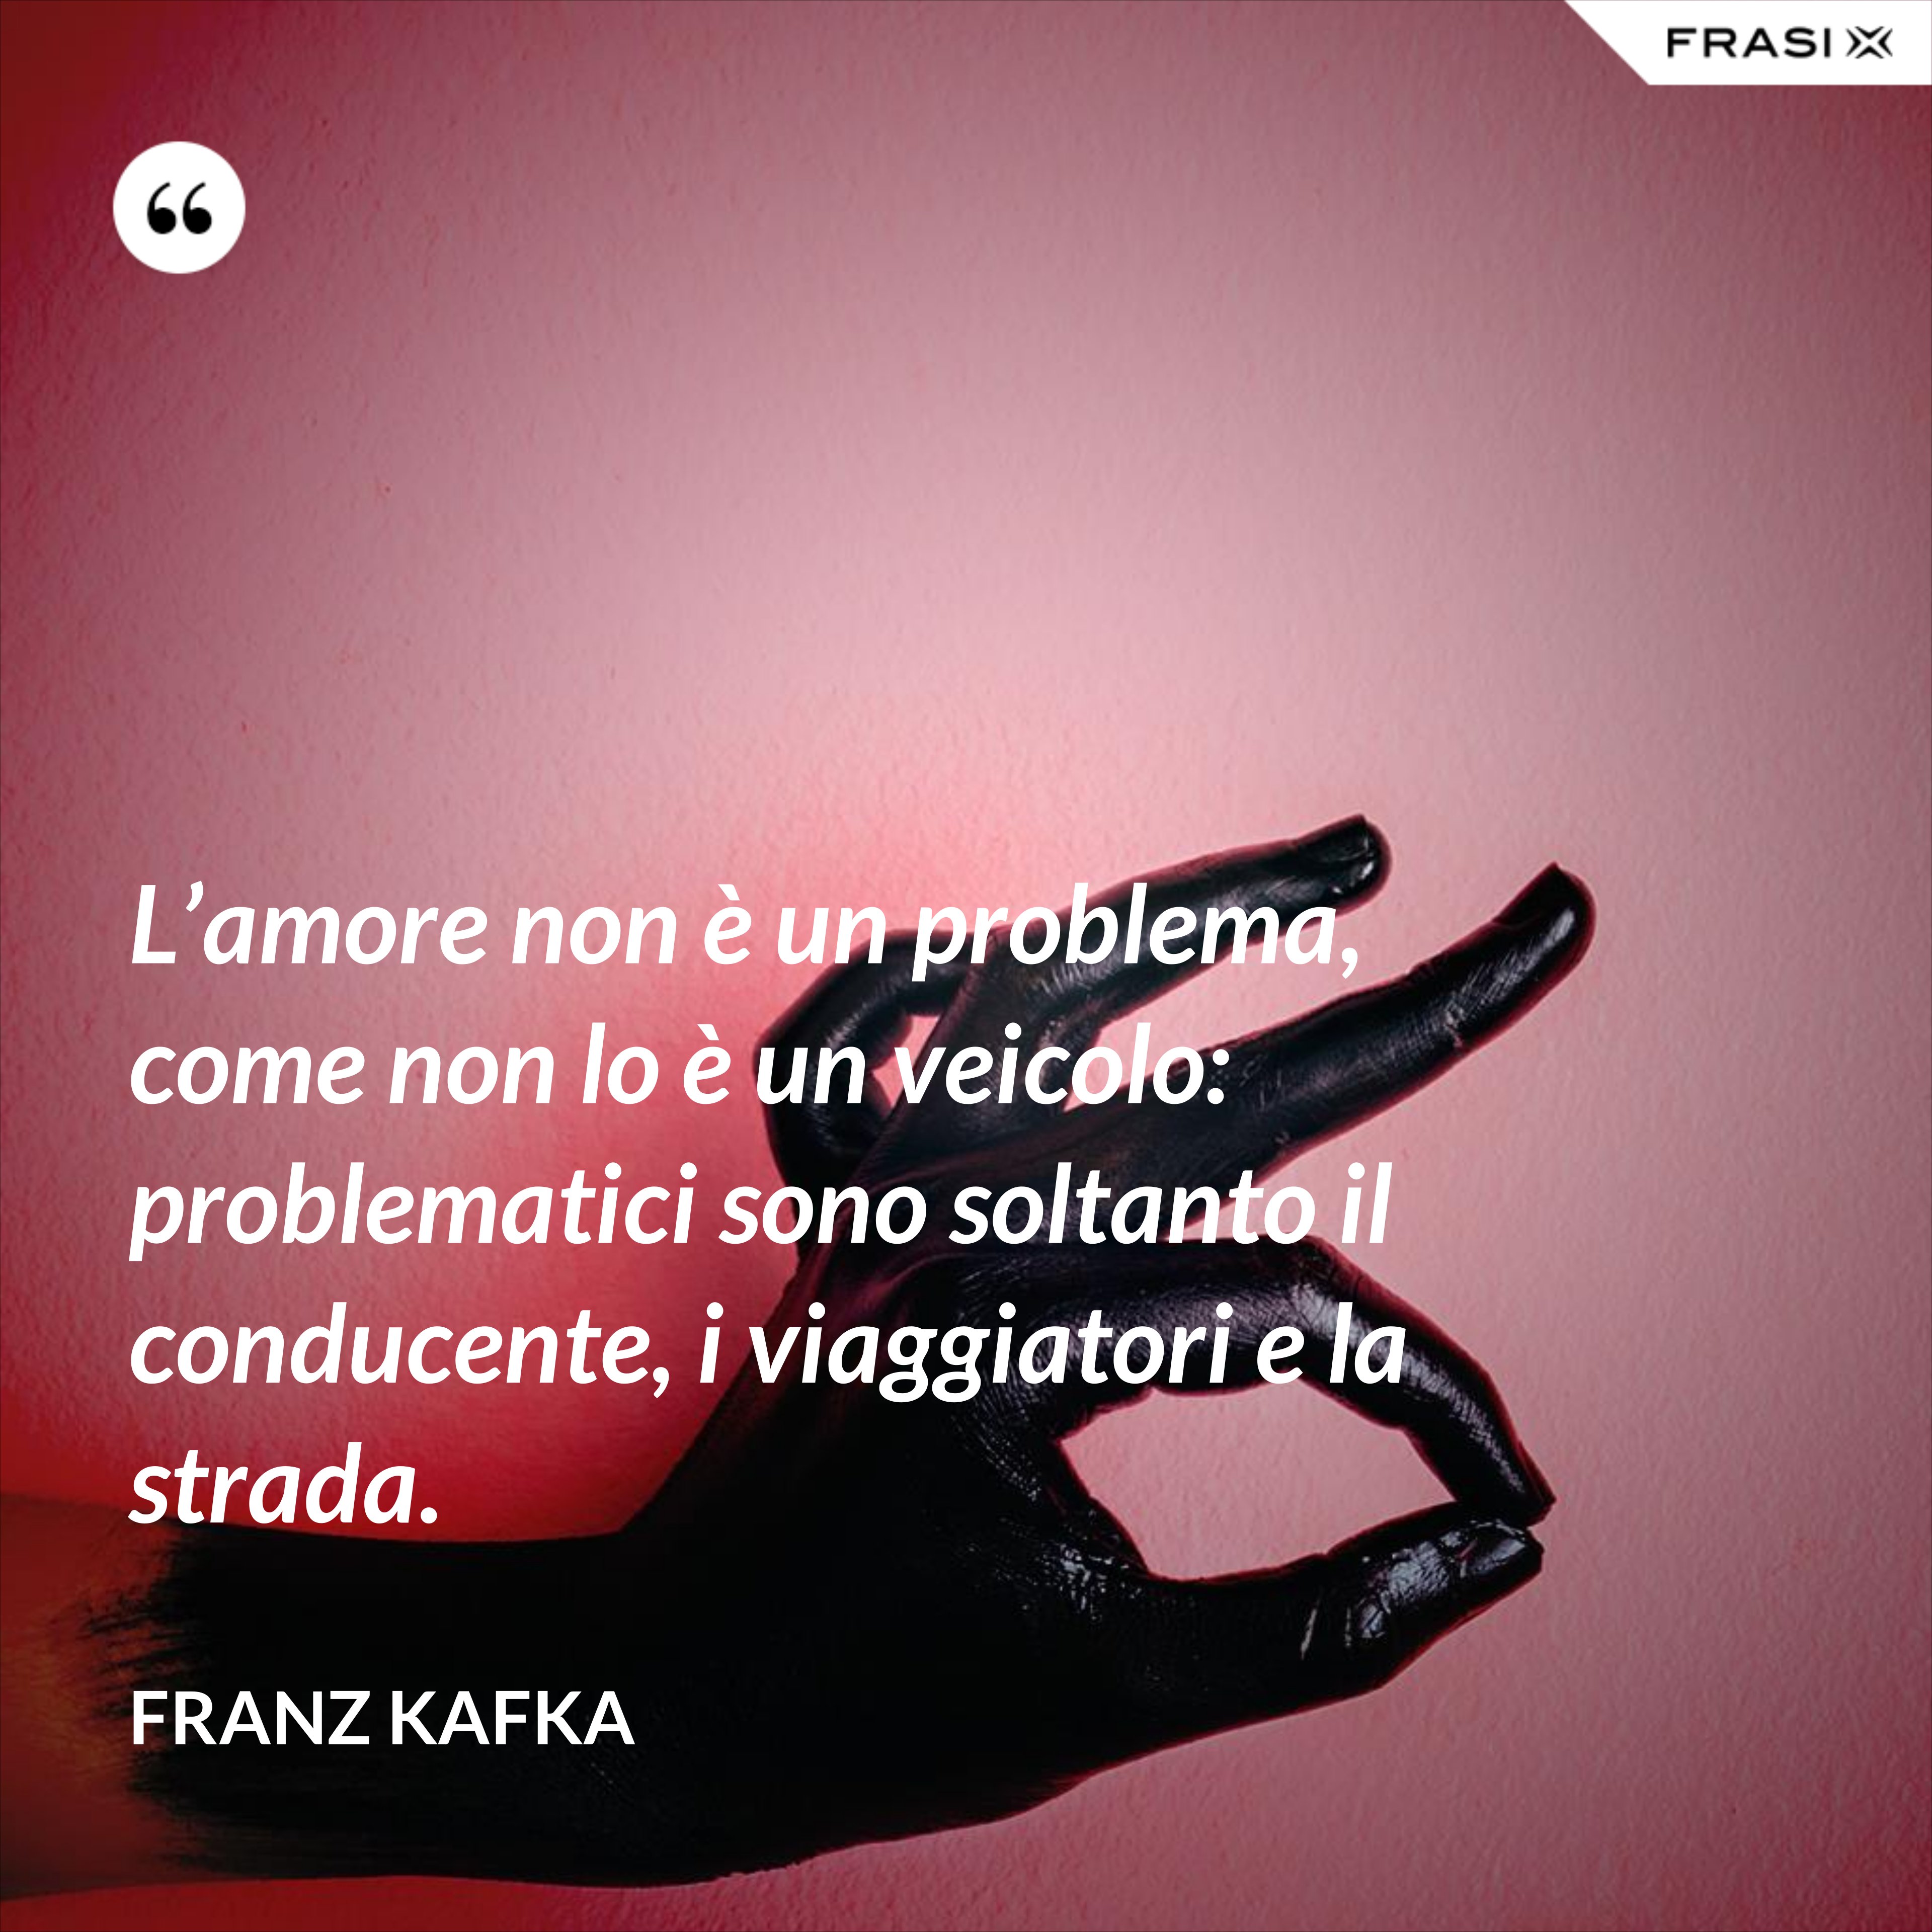 L’amore non è un problema, come non lo è un veicolo: problematici sono soltanto il conducente, i viaggiatori e la strada. - Franz Kafka